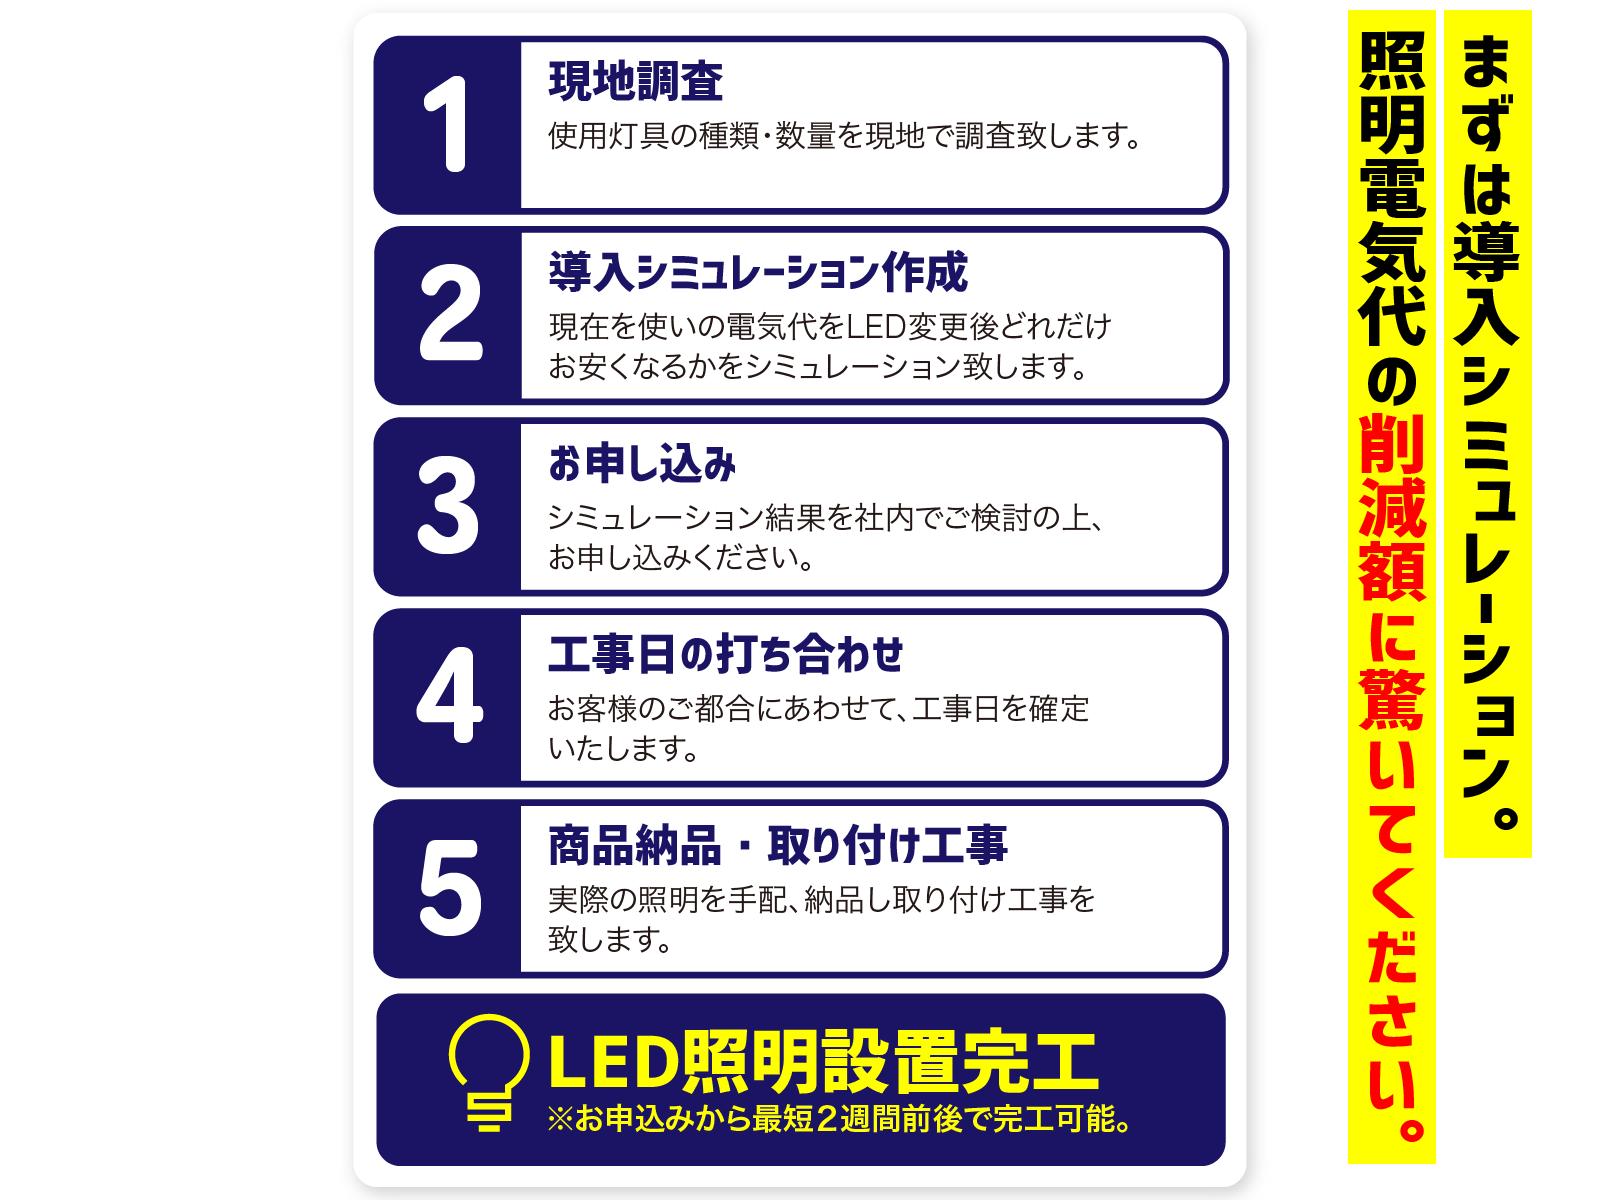 LED導入の流れの紹介